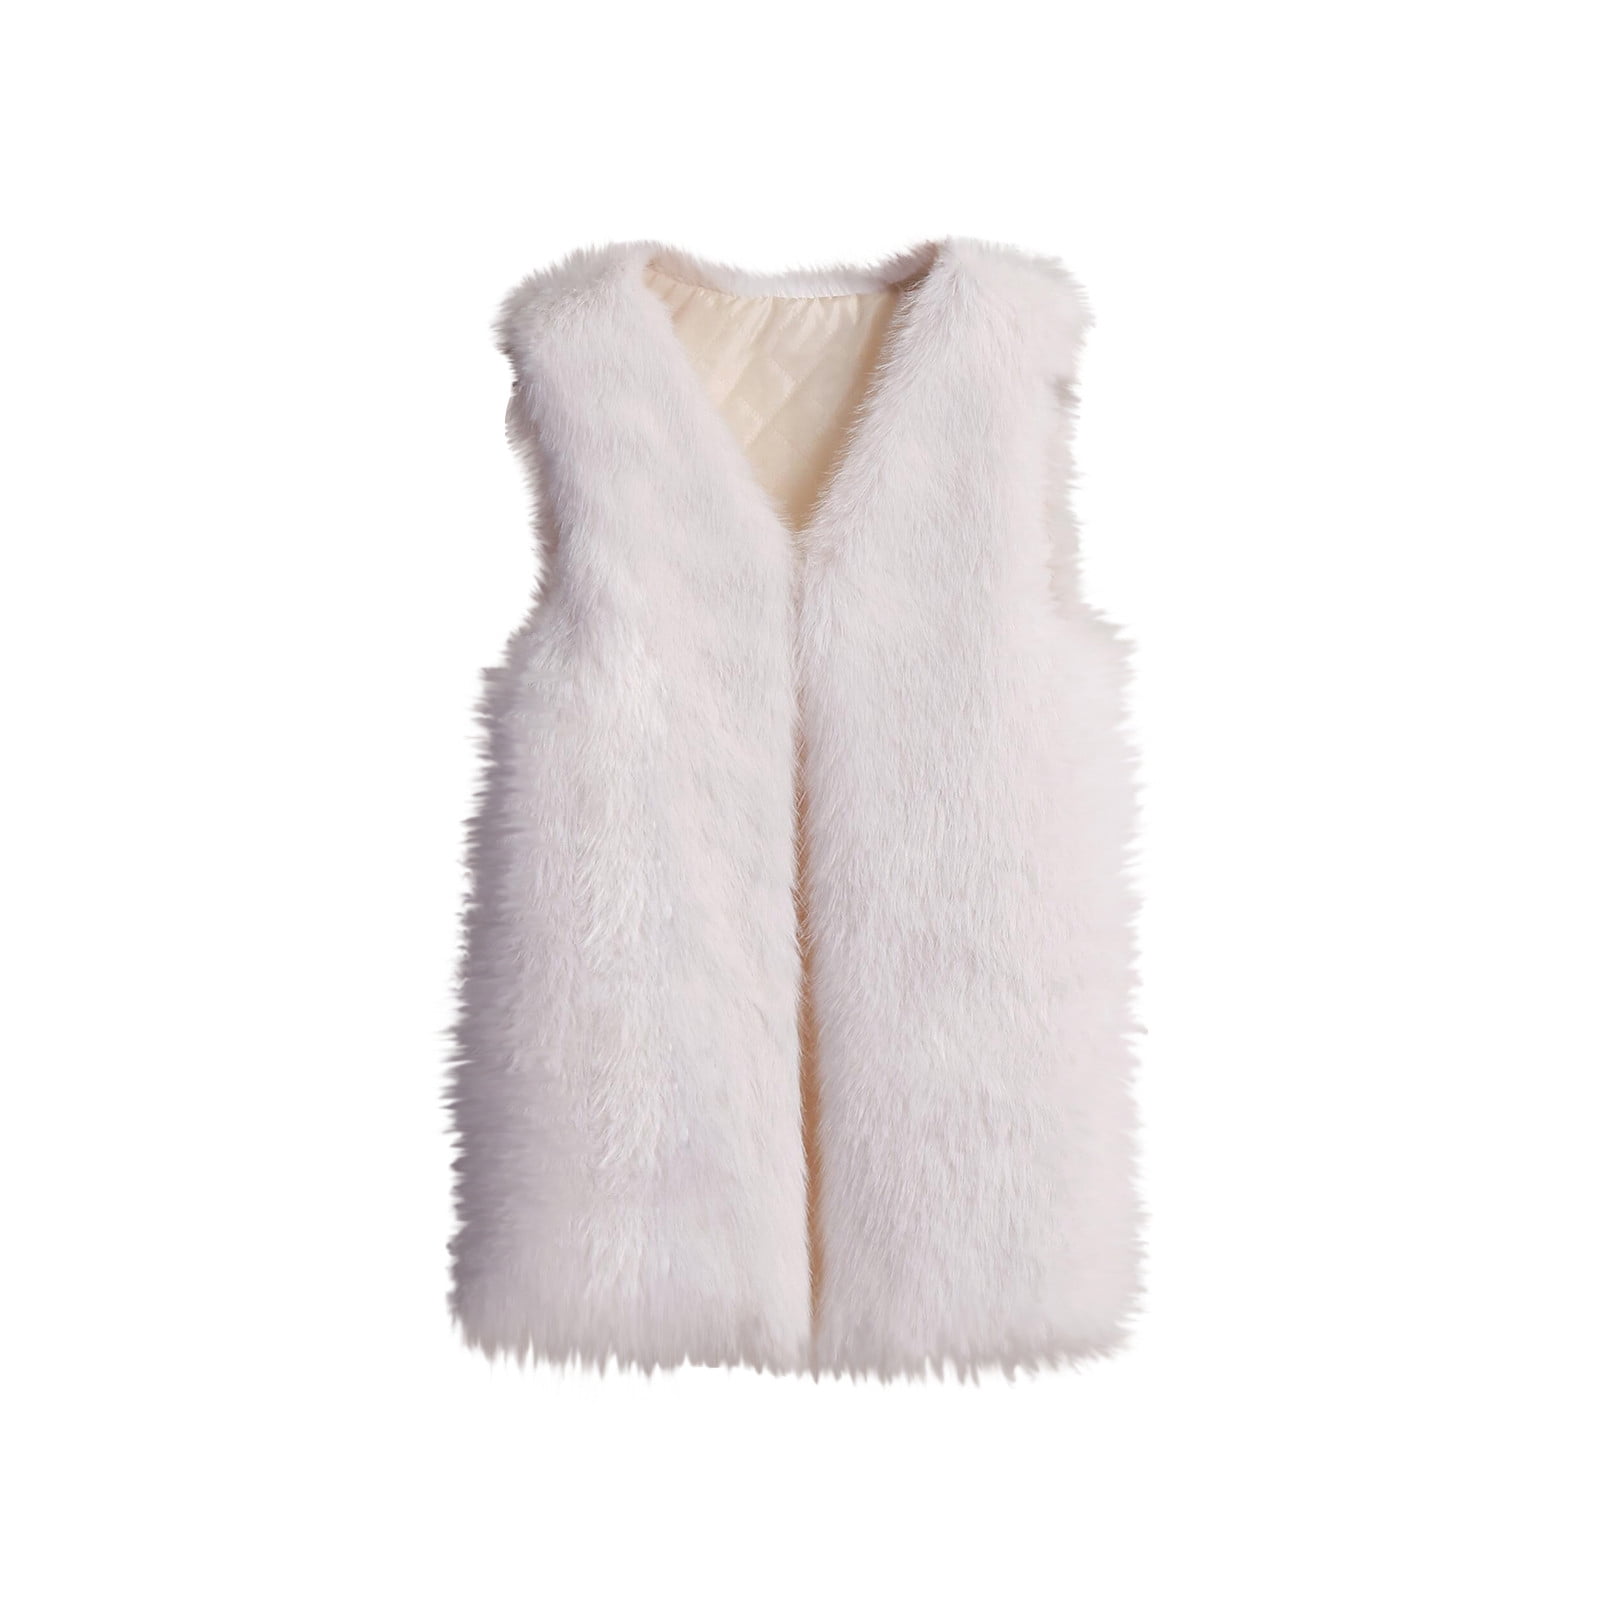 HTNBO Women's Casual Fall Winter Warm Vest Coat Fuzzy Cozy Vest Jackets  White 3XL